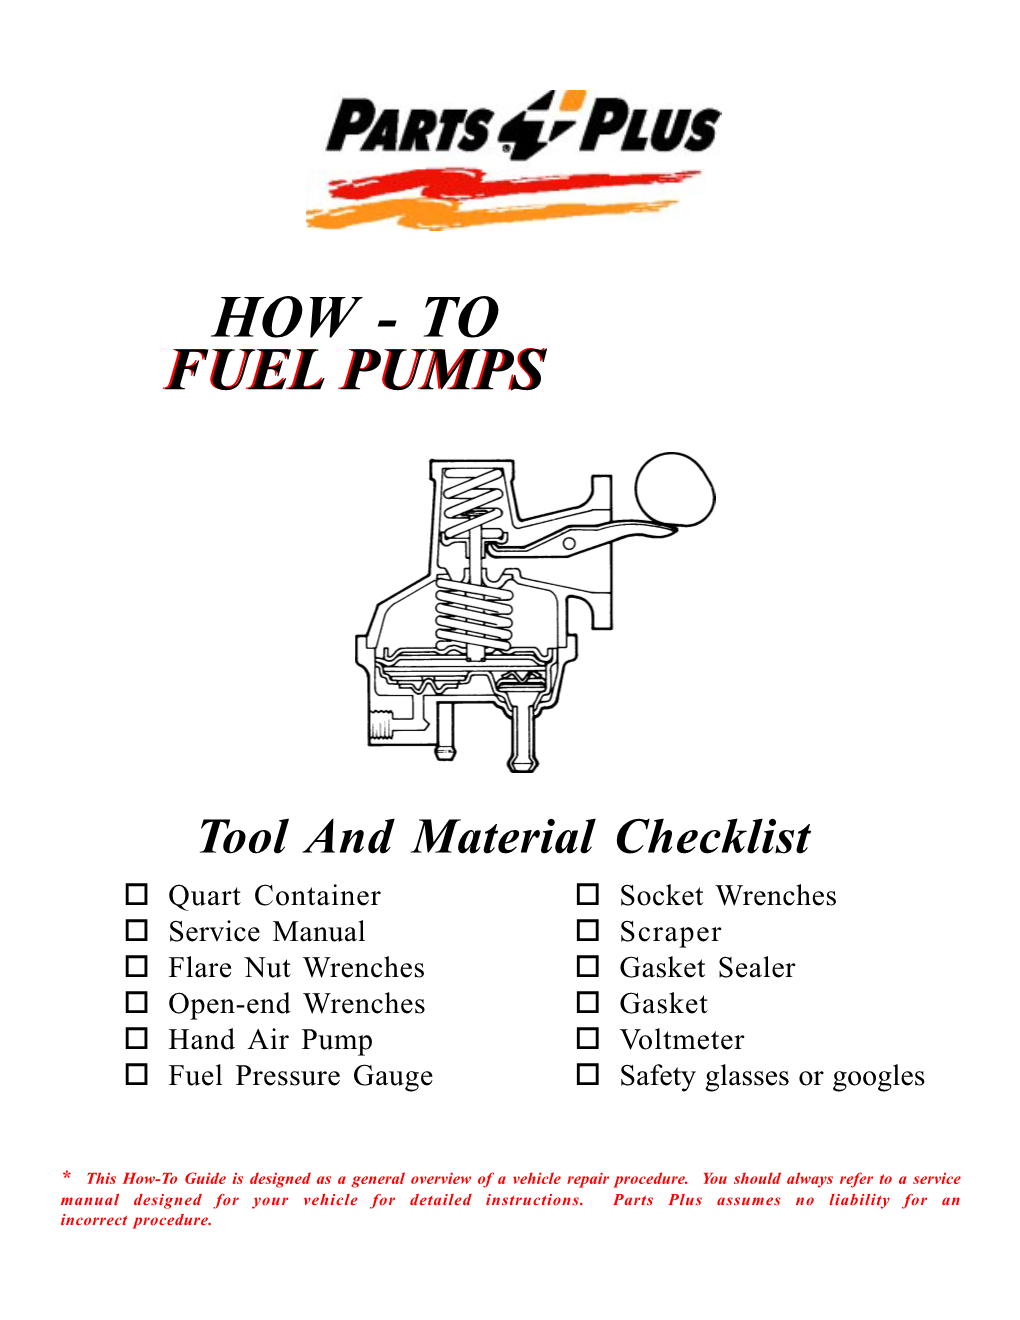 How - to Fuelfuel Pumpspumps